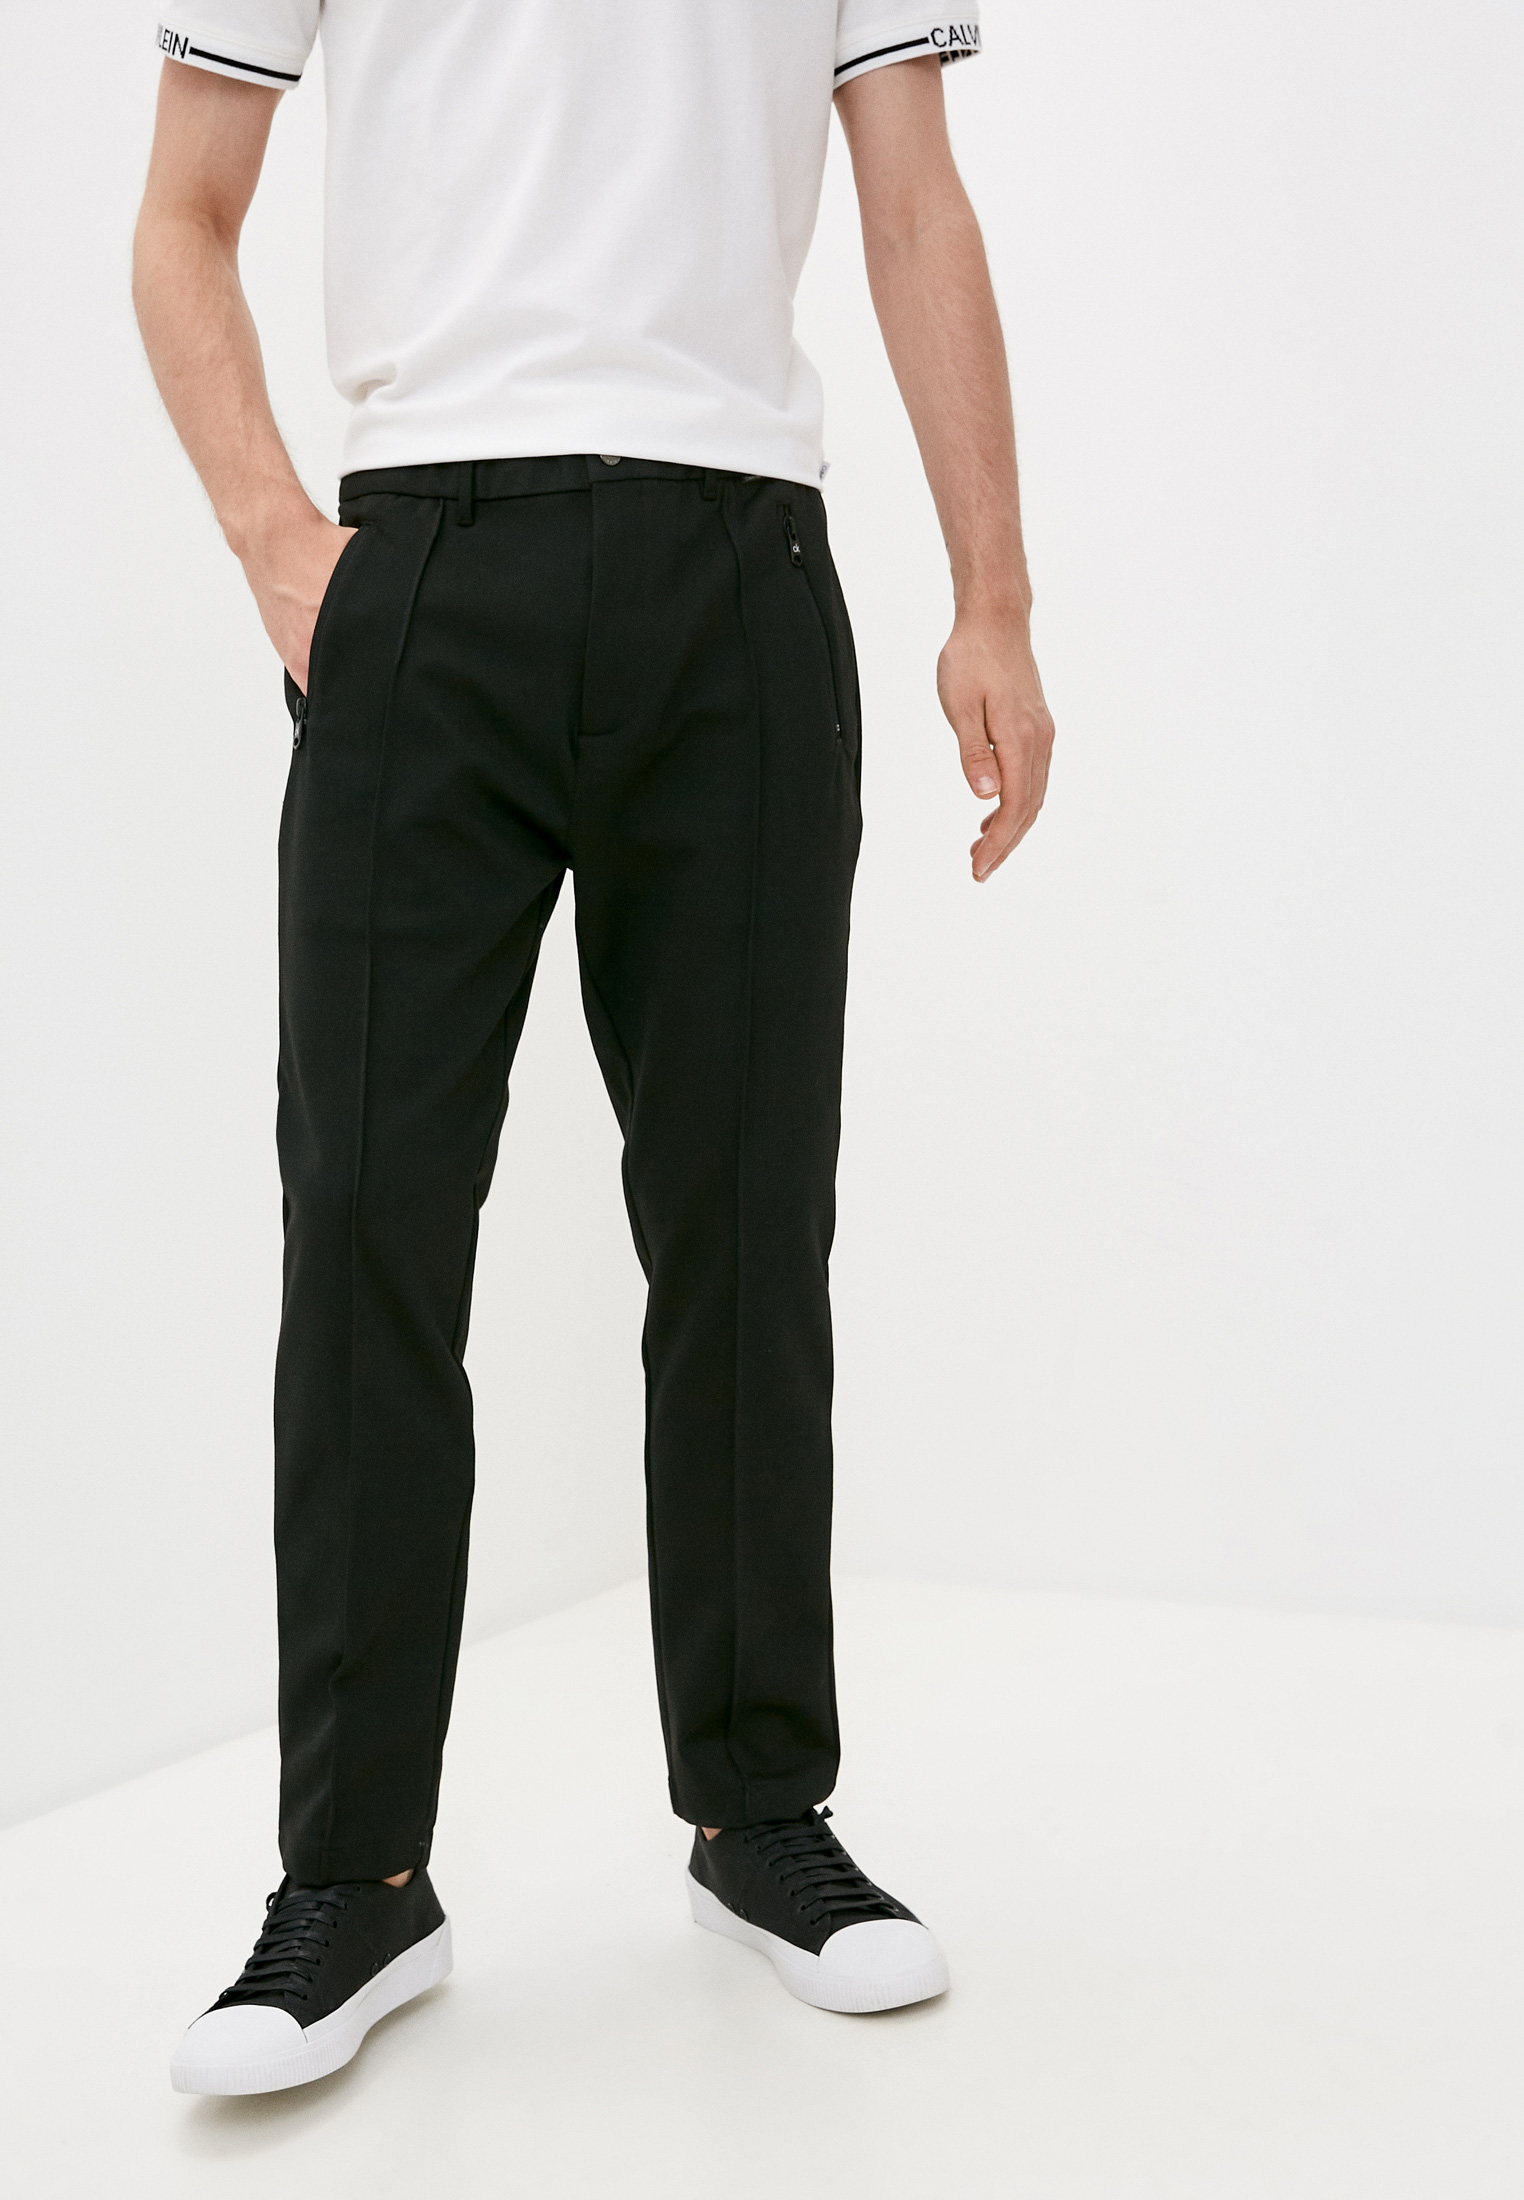 Мужские повседневные брюки Calvin Klein (Кельвин Кляйн) K10K106550: изображение 1